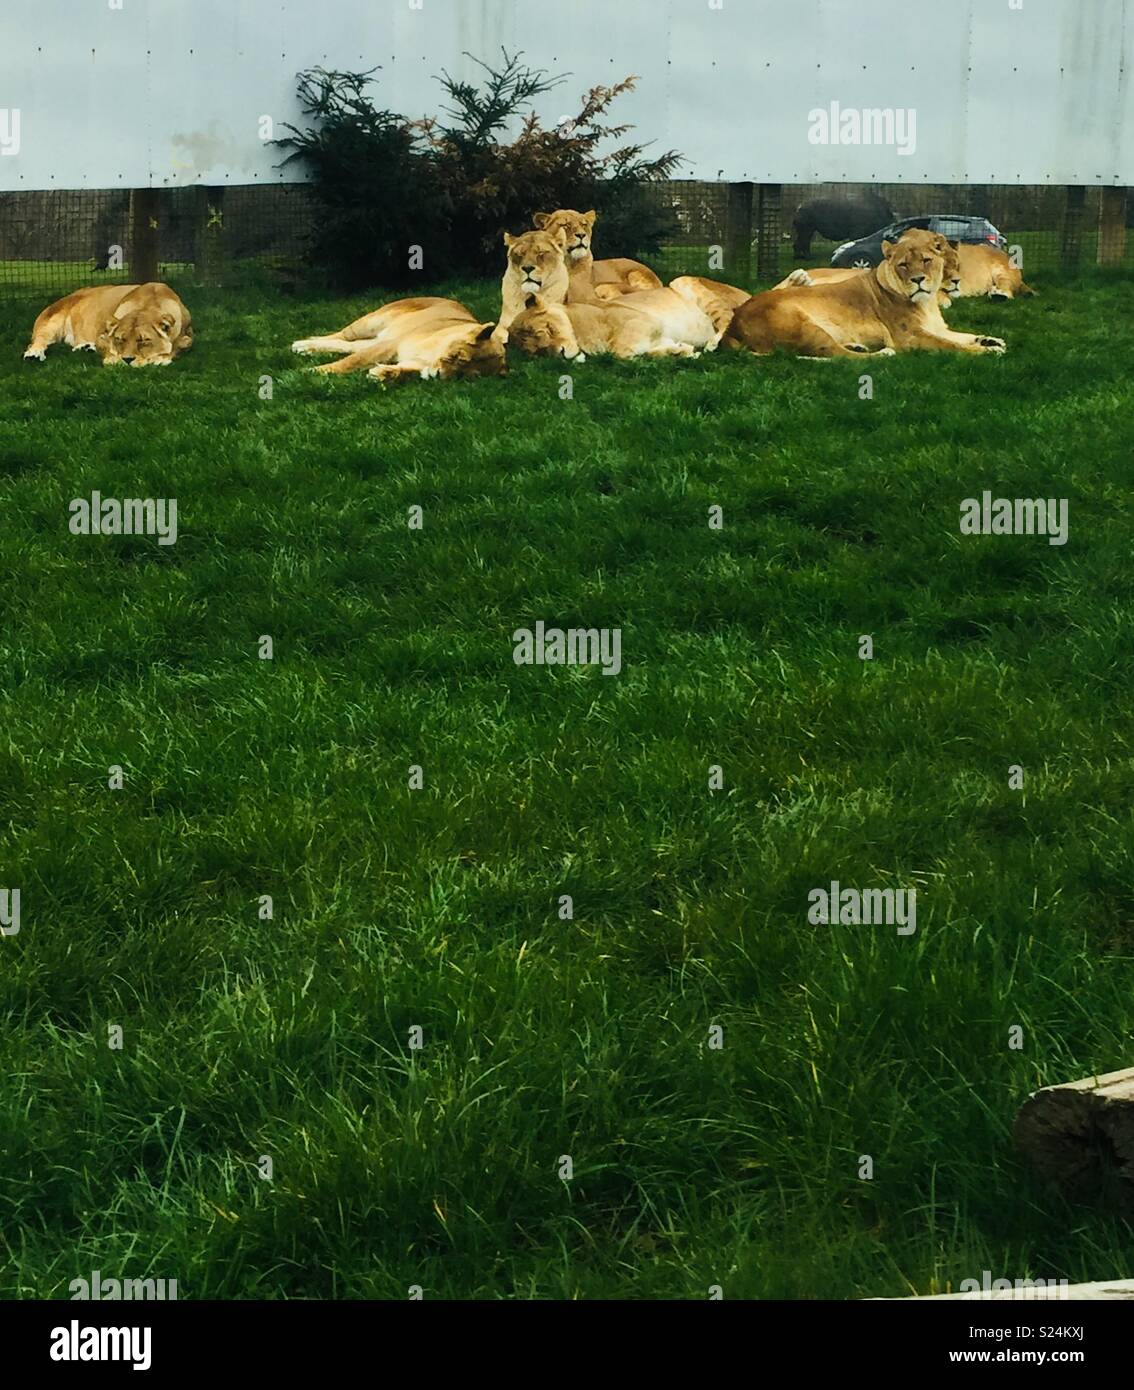 Lions au repos Banque D'Images